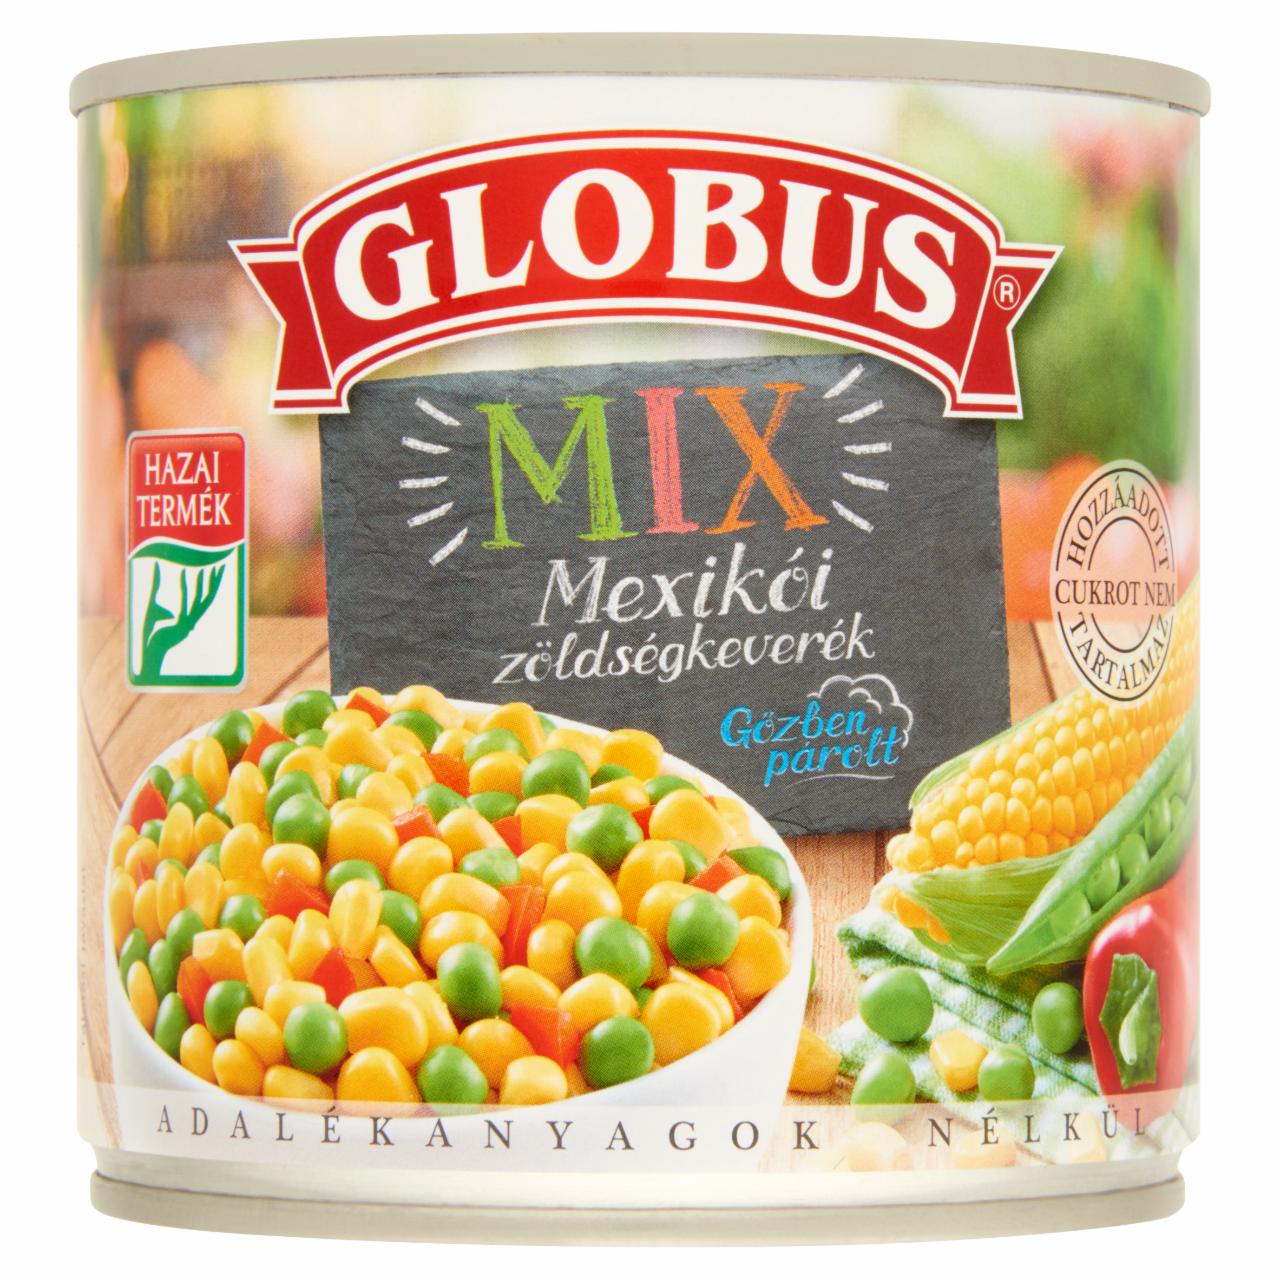 Képek - Globus Mix mexikói zöldségkeverék 300 g